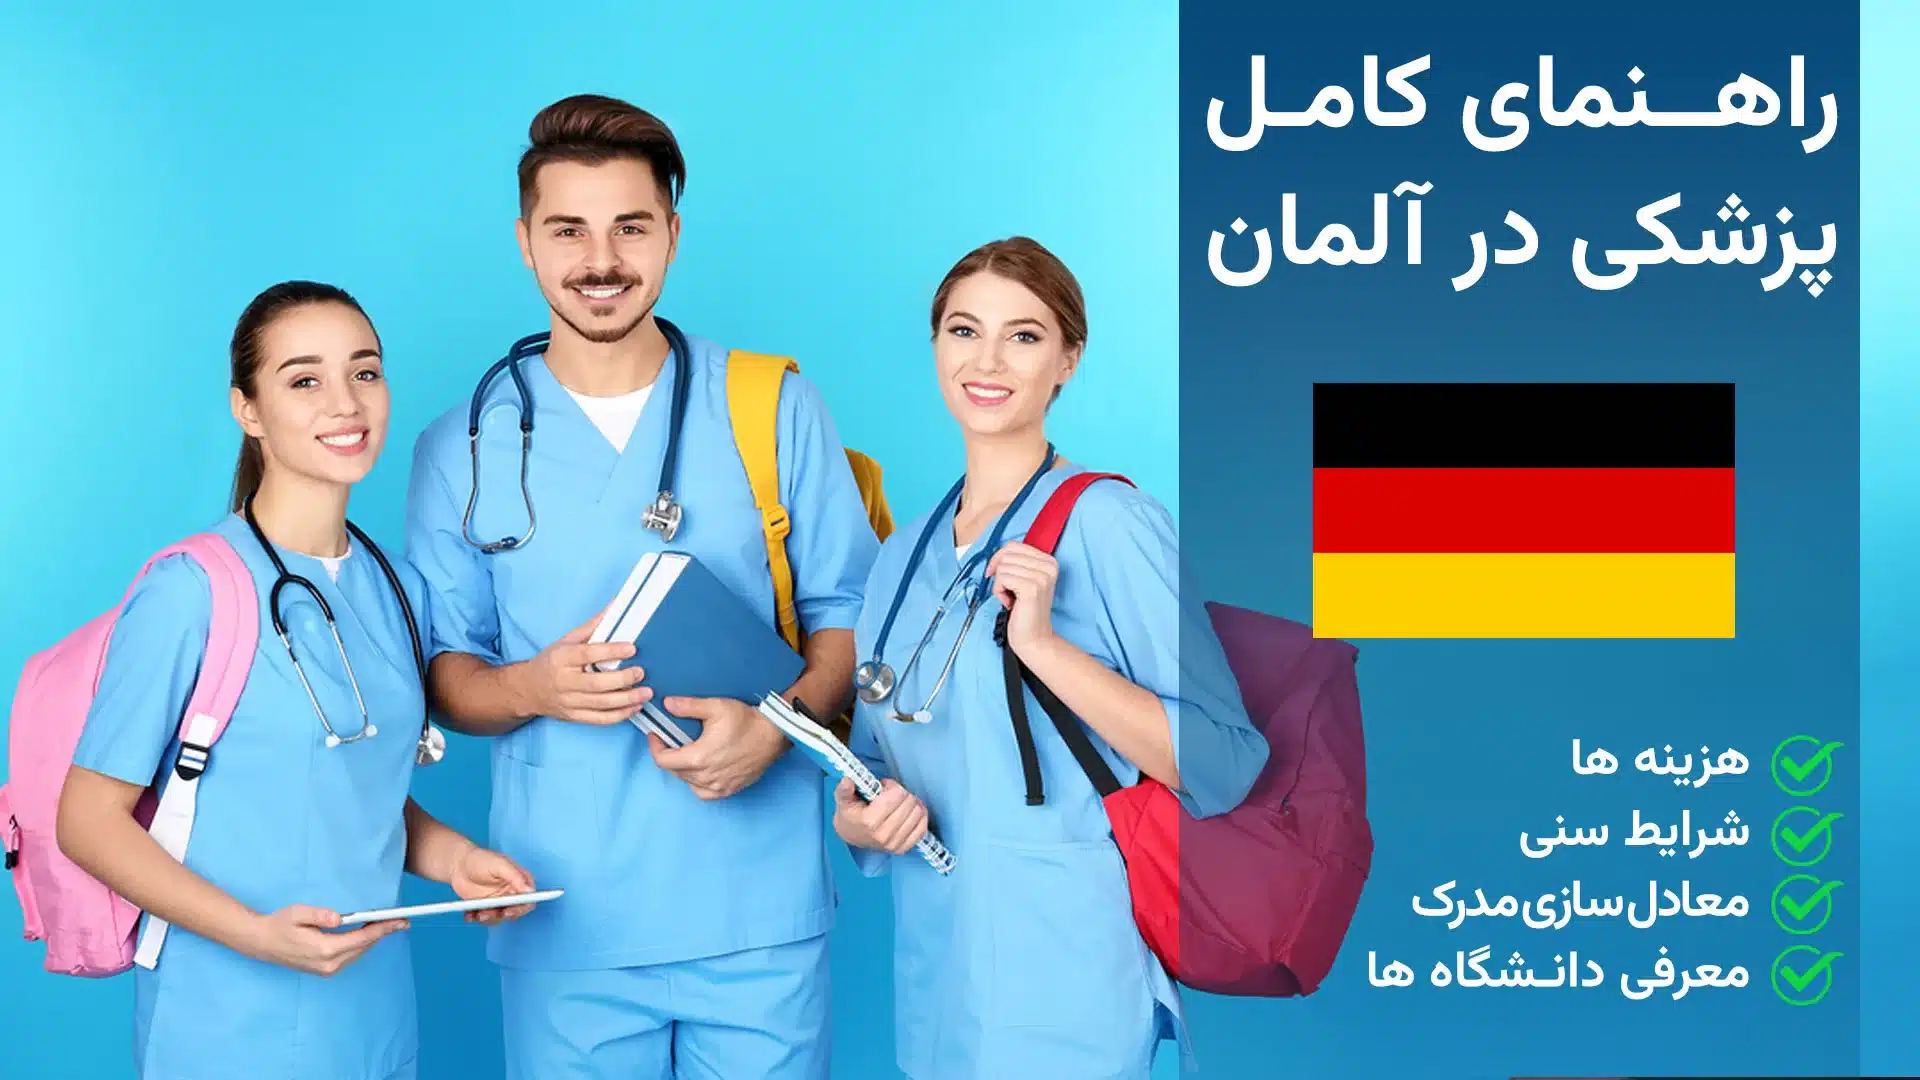 مهاجرت از طریق ویزا دوره تخصص پزشکی به آلمان